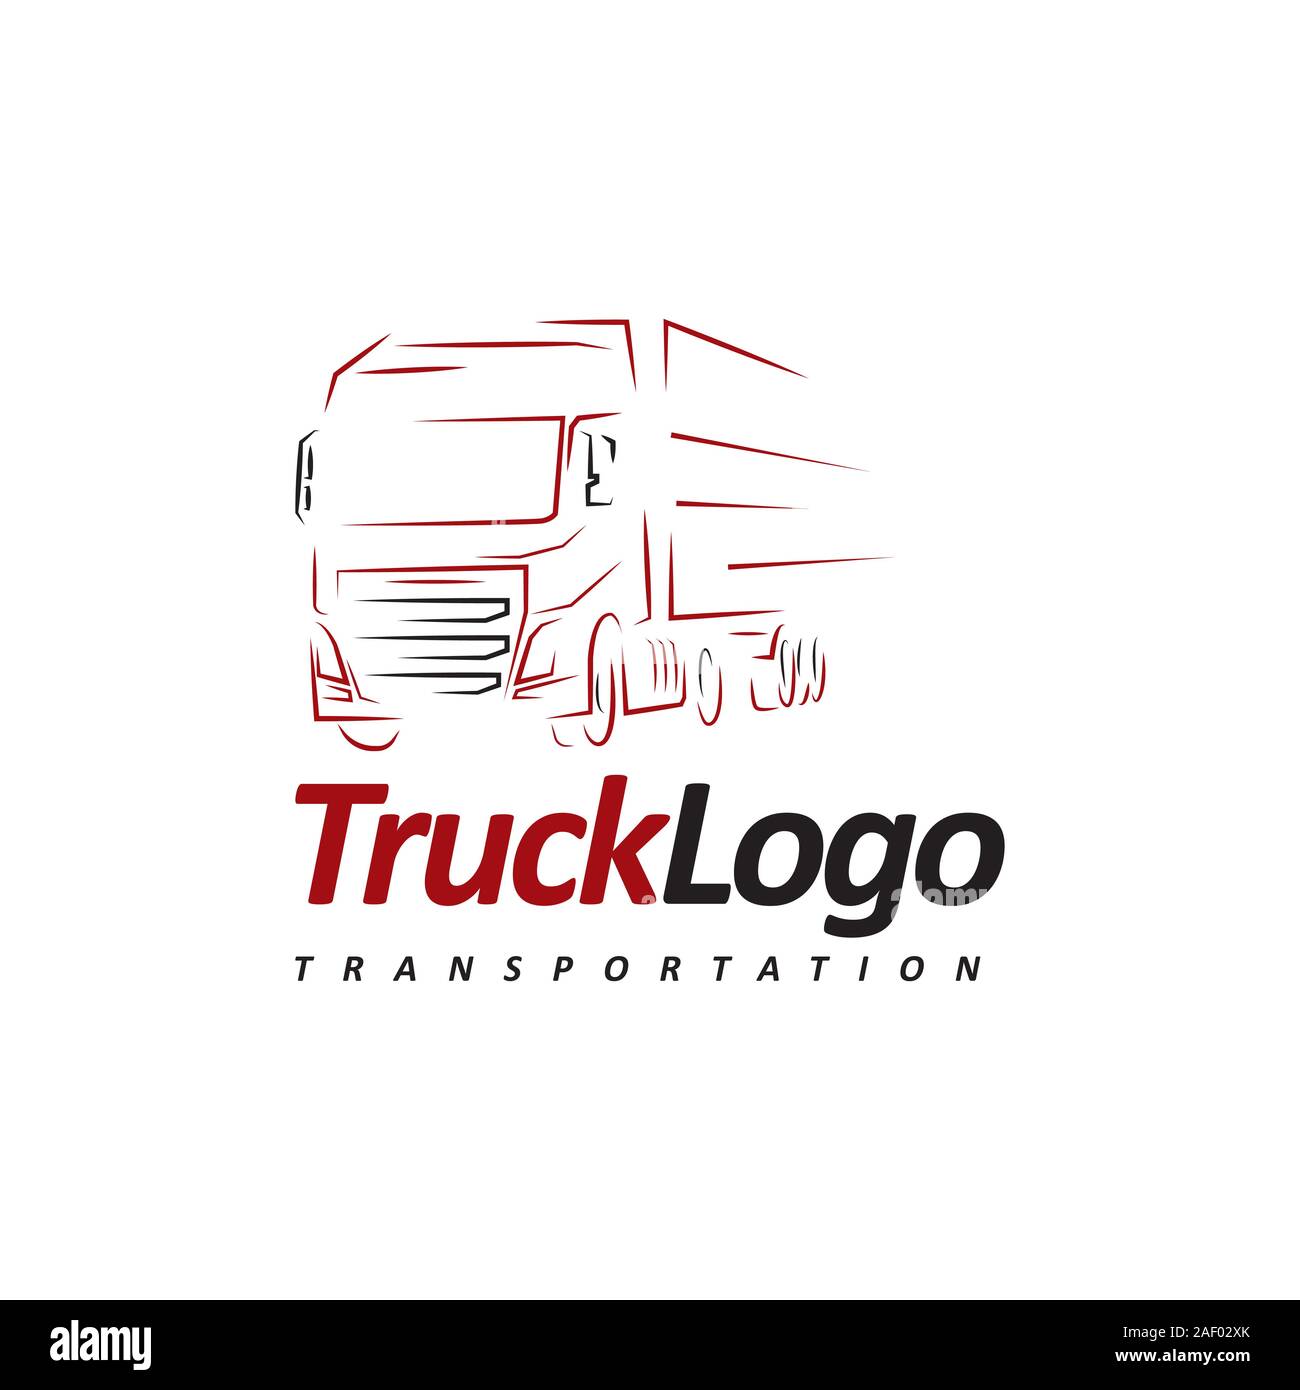 truck logo designer